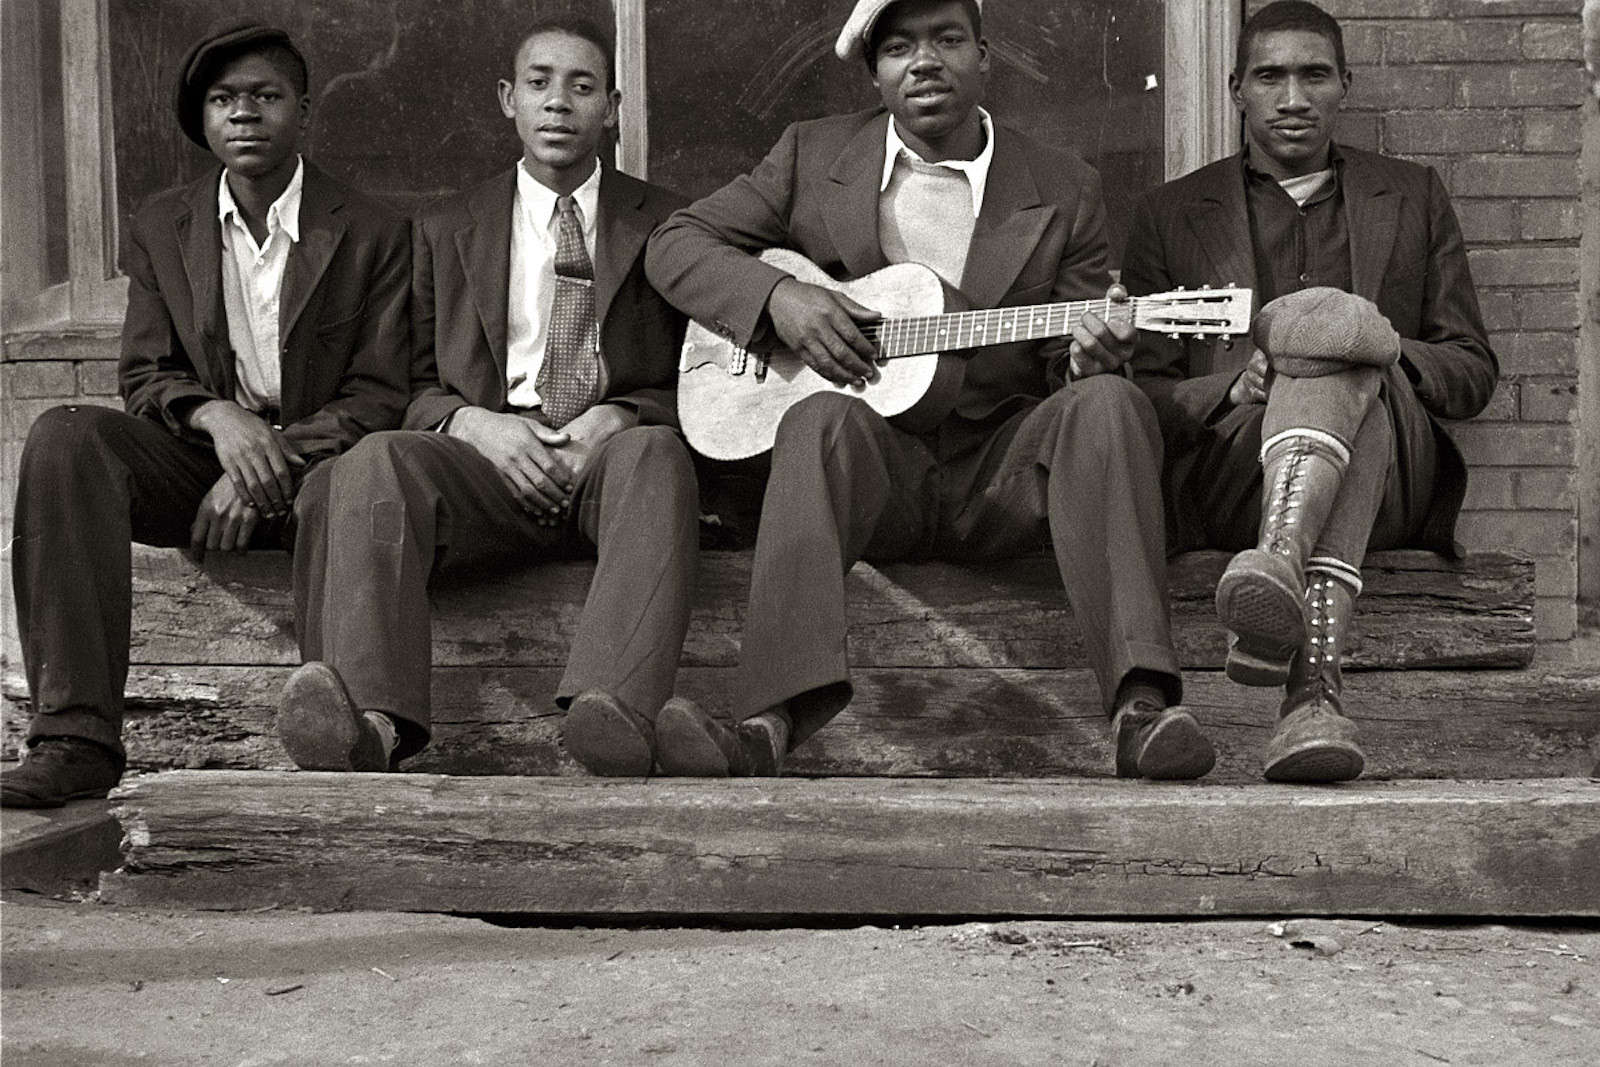 История чернокожих. Афроамериканцы в США 1920 джаз. Джаз в 20-е годы в США. Афроамериканцы в Америке в 1920-е. Негритянская культура 20 века.